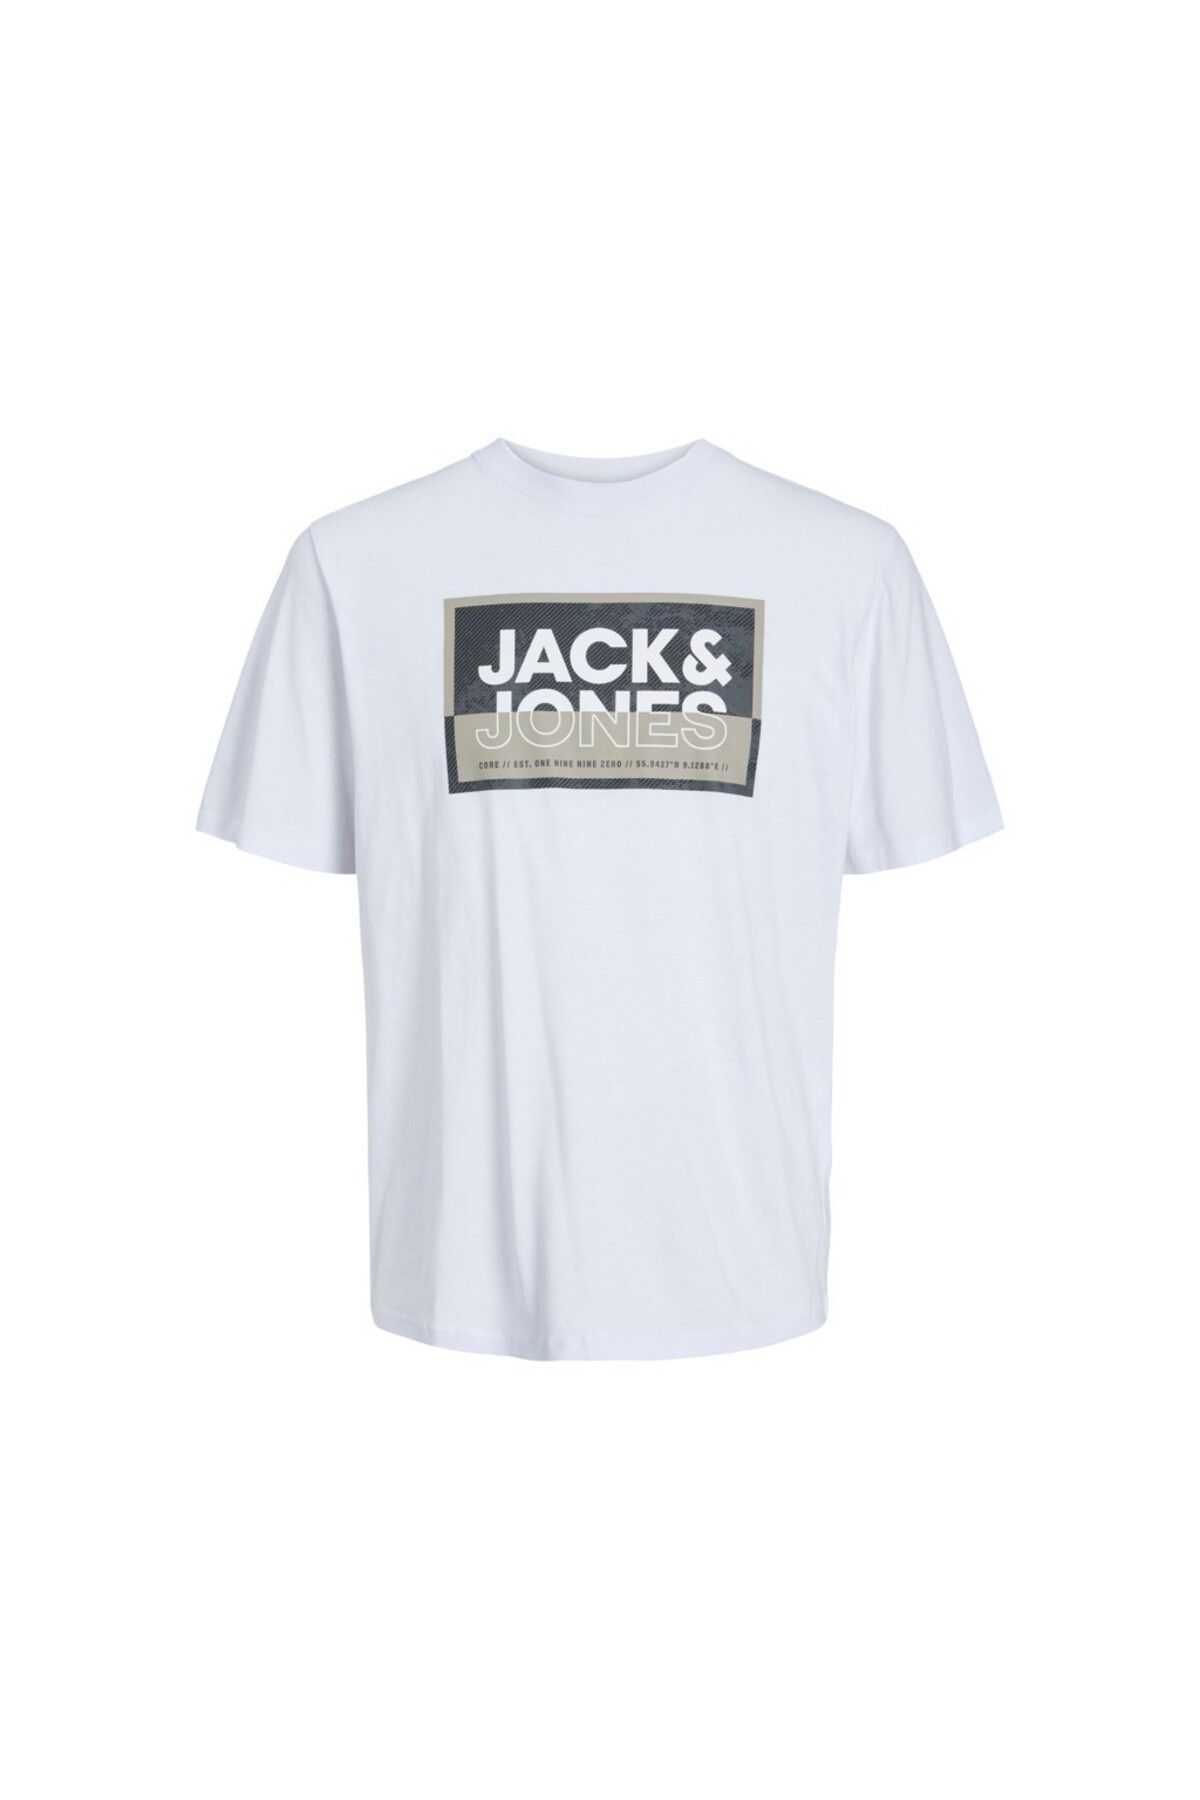 Jack & Jones Jack&jones Logan Erkek Beyaz Bisiklet Yaka Tişört